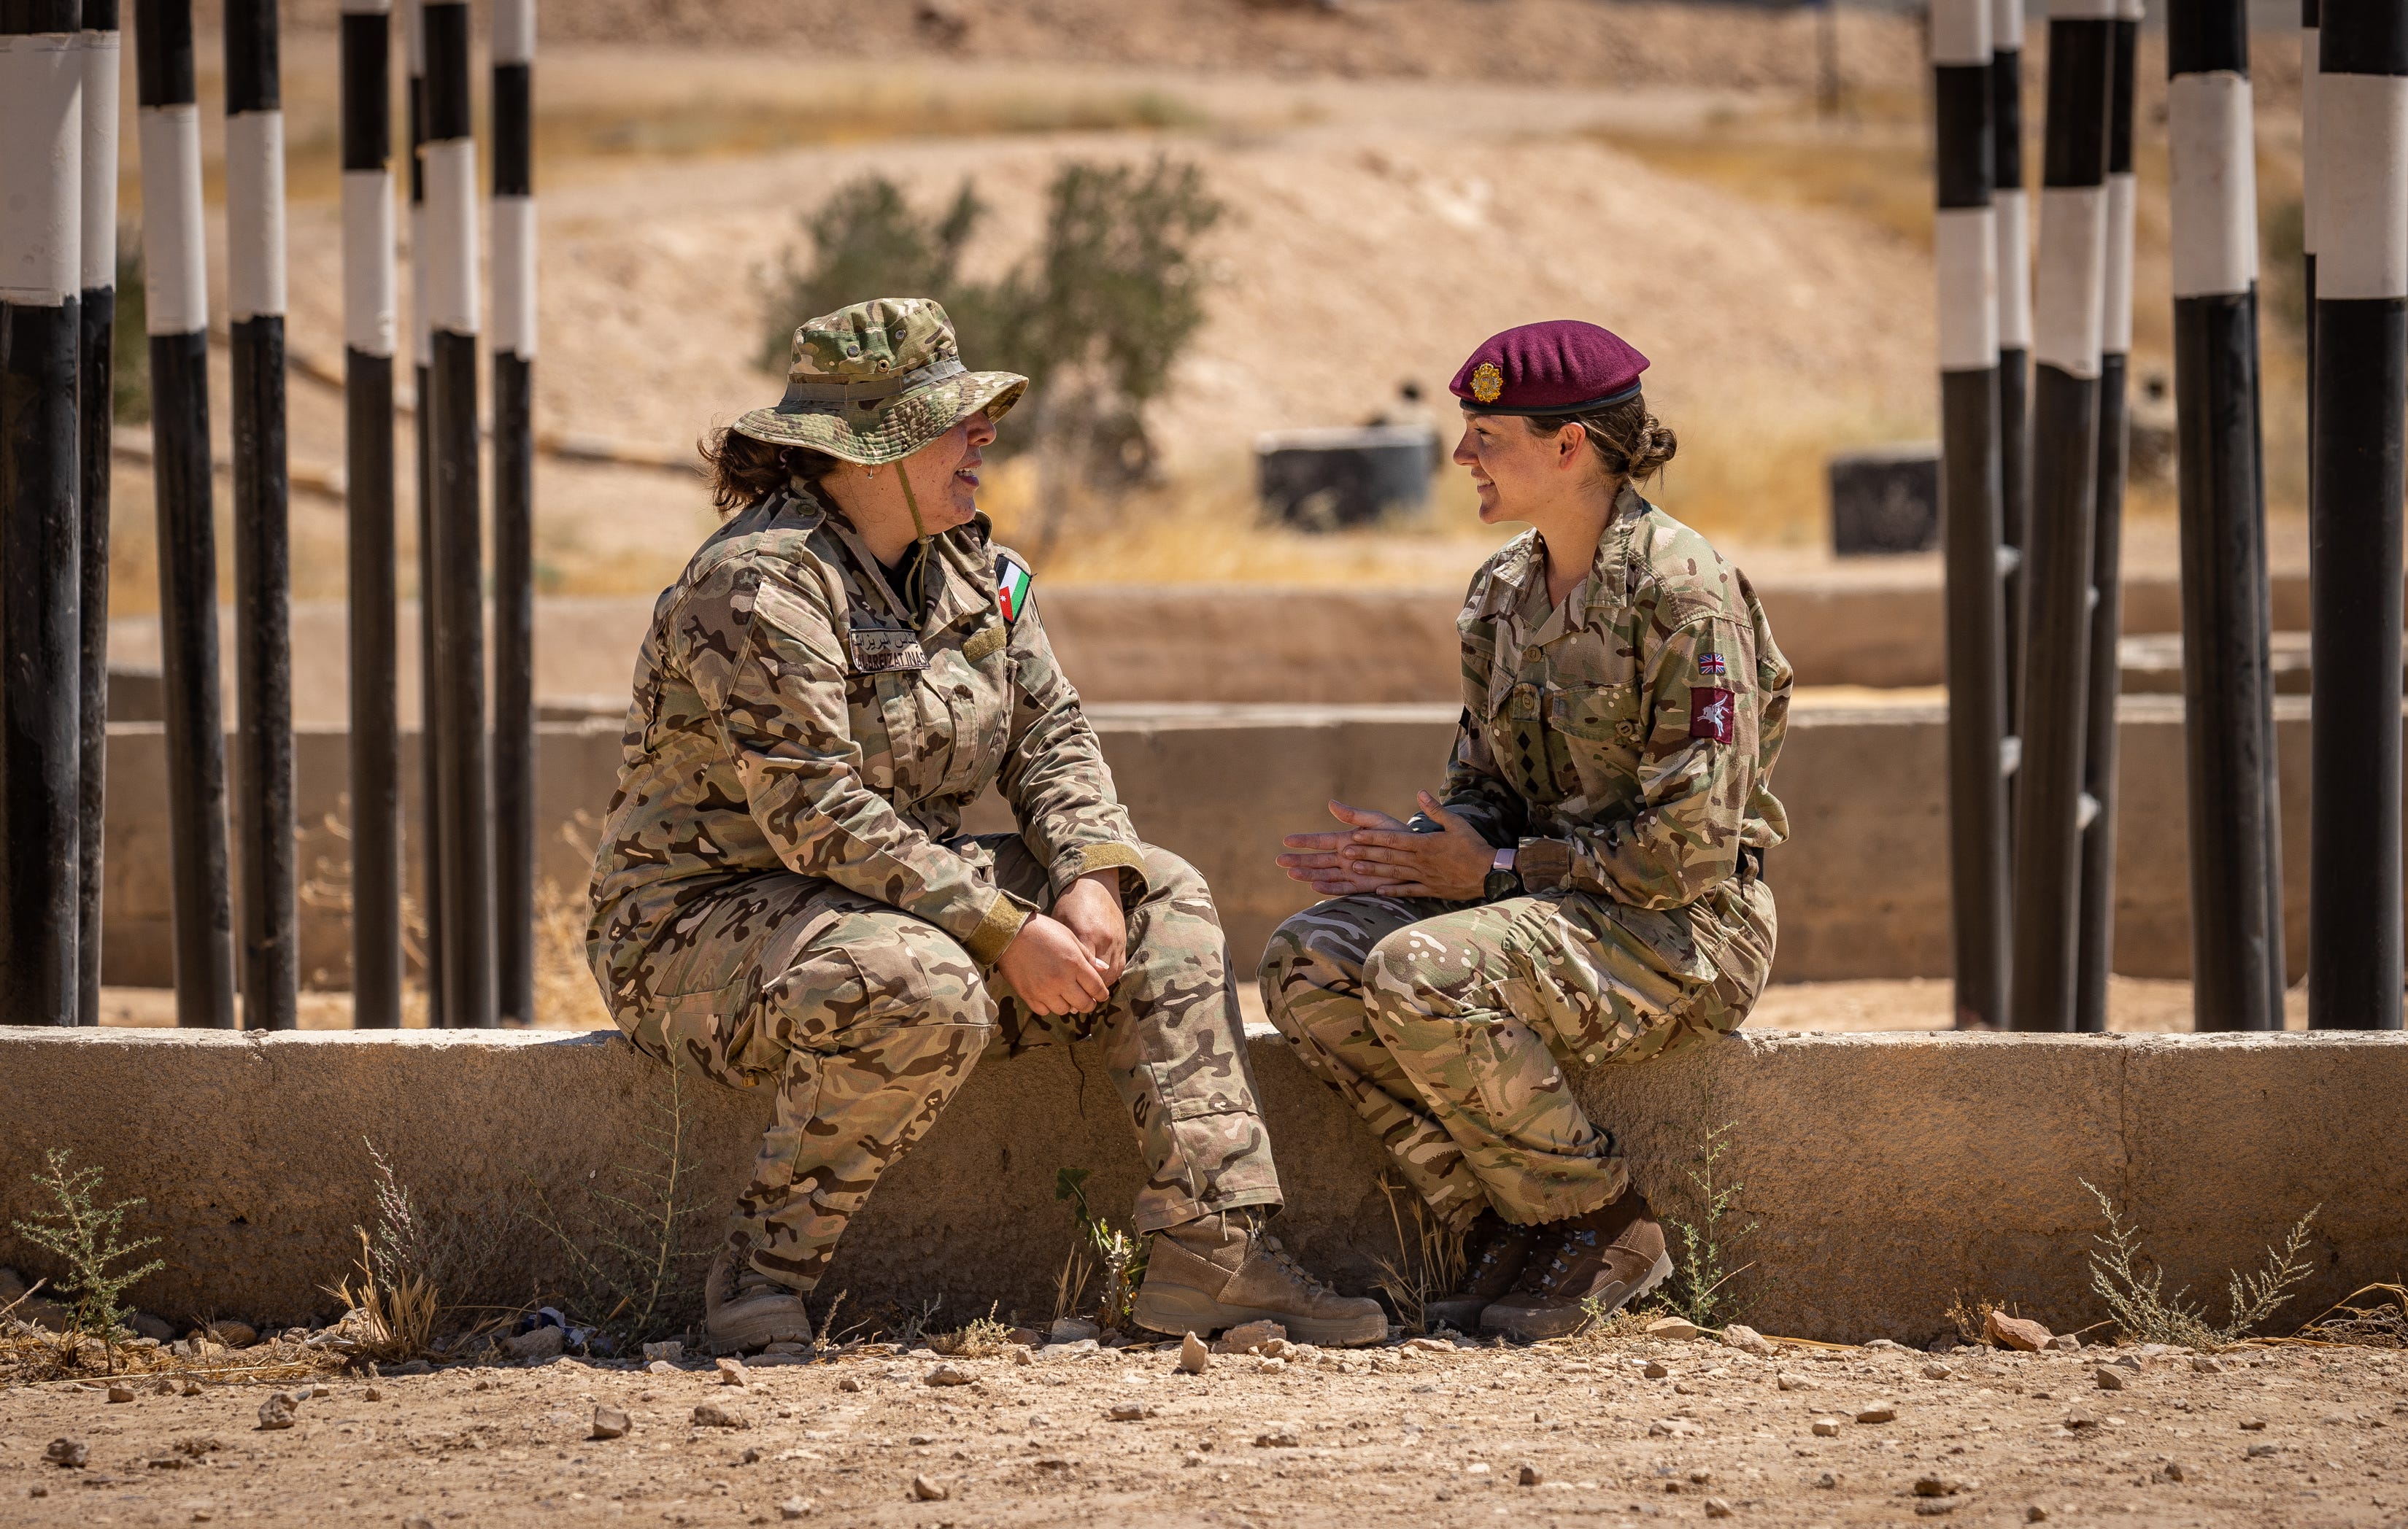 lejlighed knoglebrud fløjte Leading an all-female team in Jordan | CSG21 | Voices Of The Armed Forces